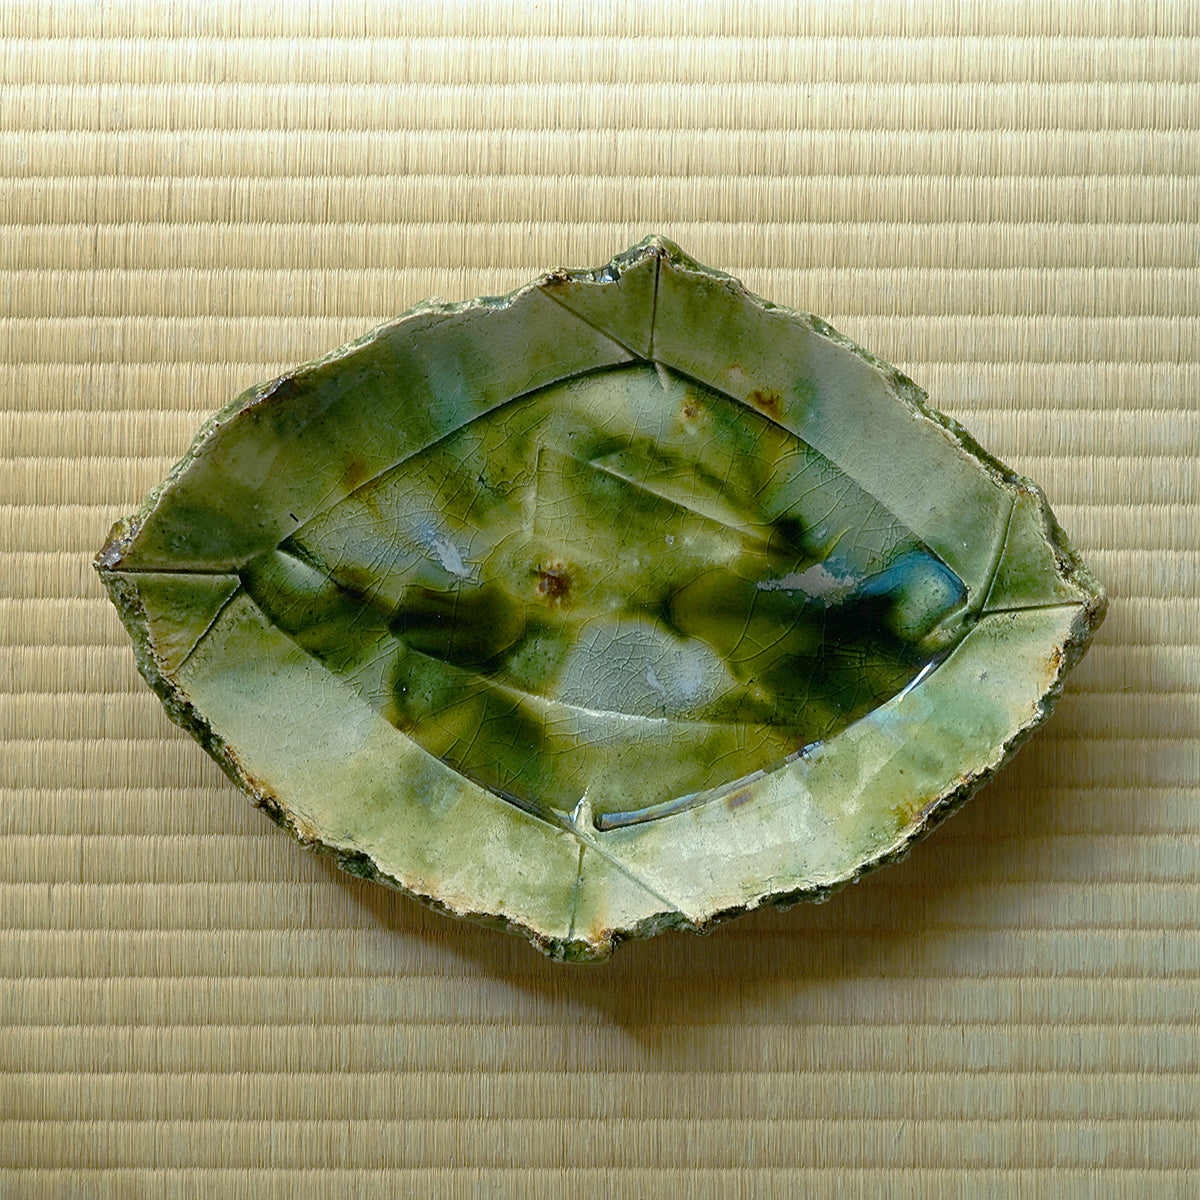 陶芸・穂高 隆児 展『 道楽口重（どらくえ）』　Solo exhibition by ceramic artist HODAKA Ryuji “DRAQUE” - Life is Epicurism -　追加作品３０点を公開しました